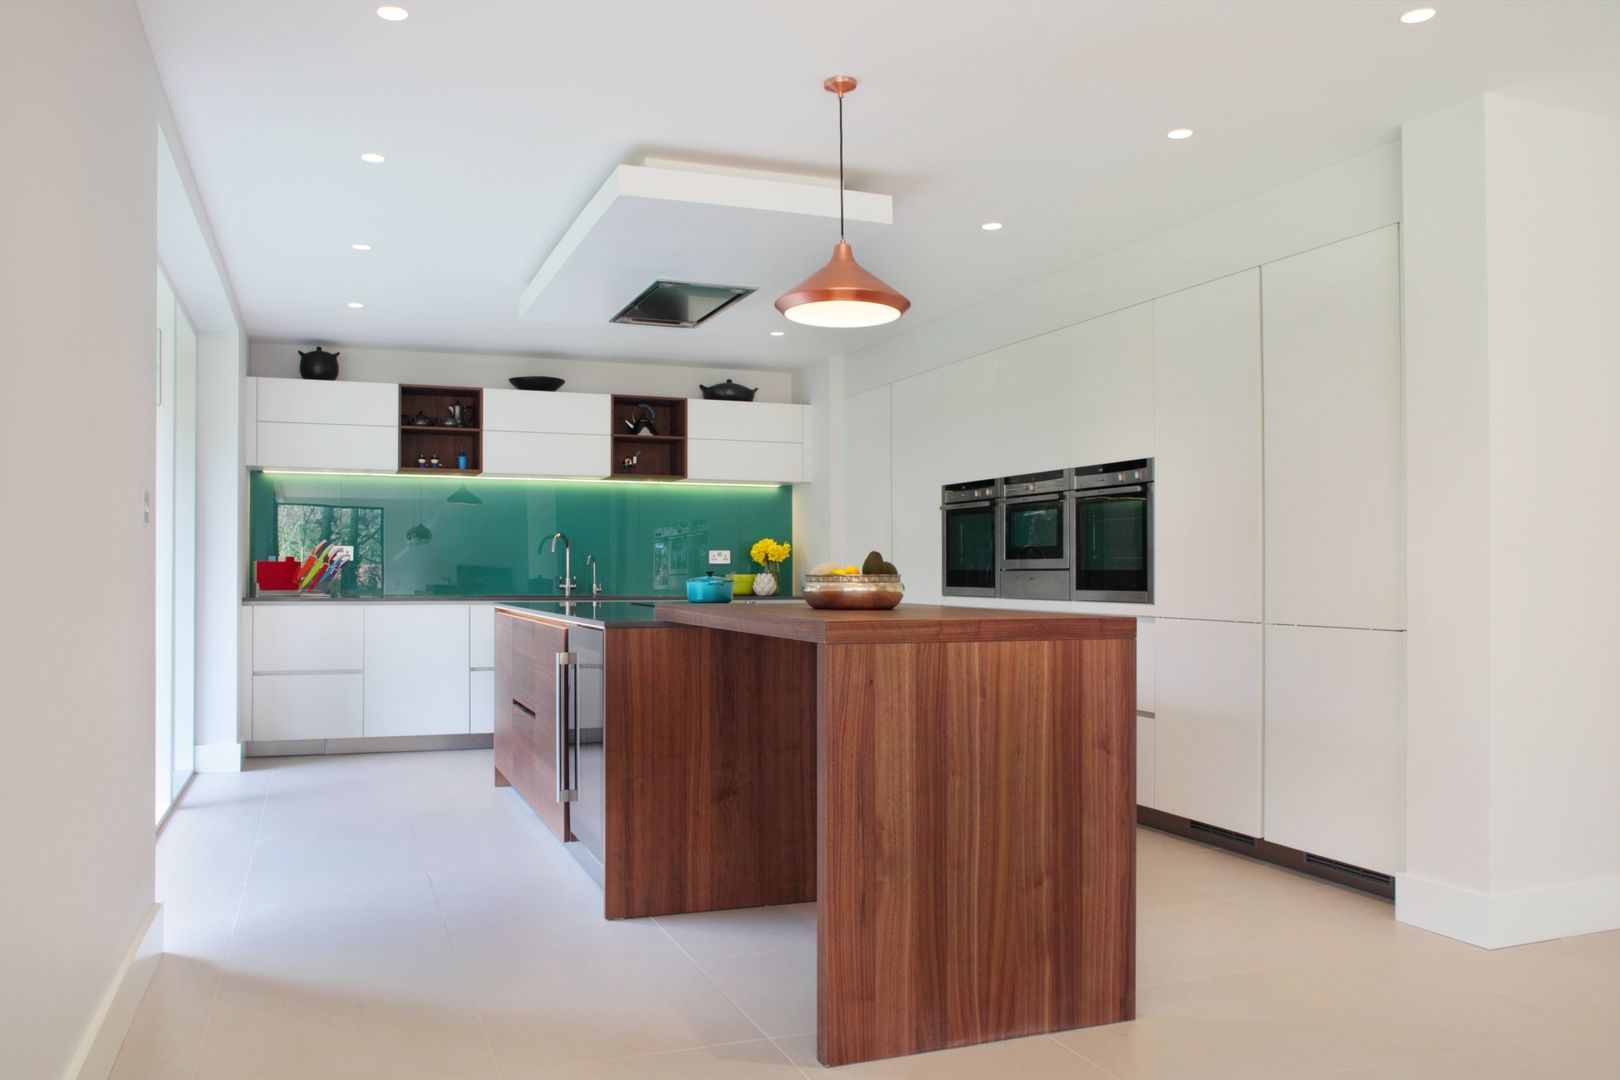 Contemporary Kitchen in Walnut and White Glass in-toto Kitchens Design Studio Marlow Moderne Küchen